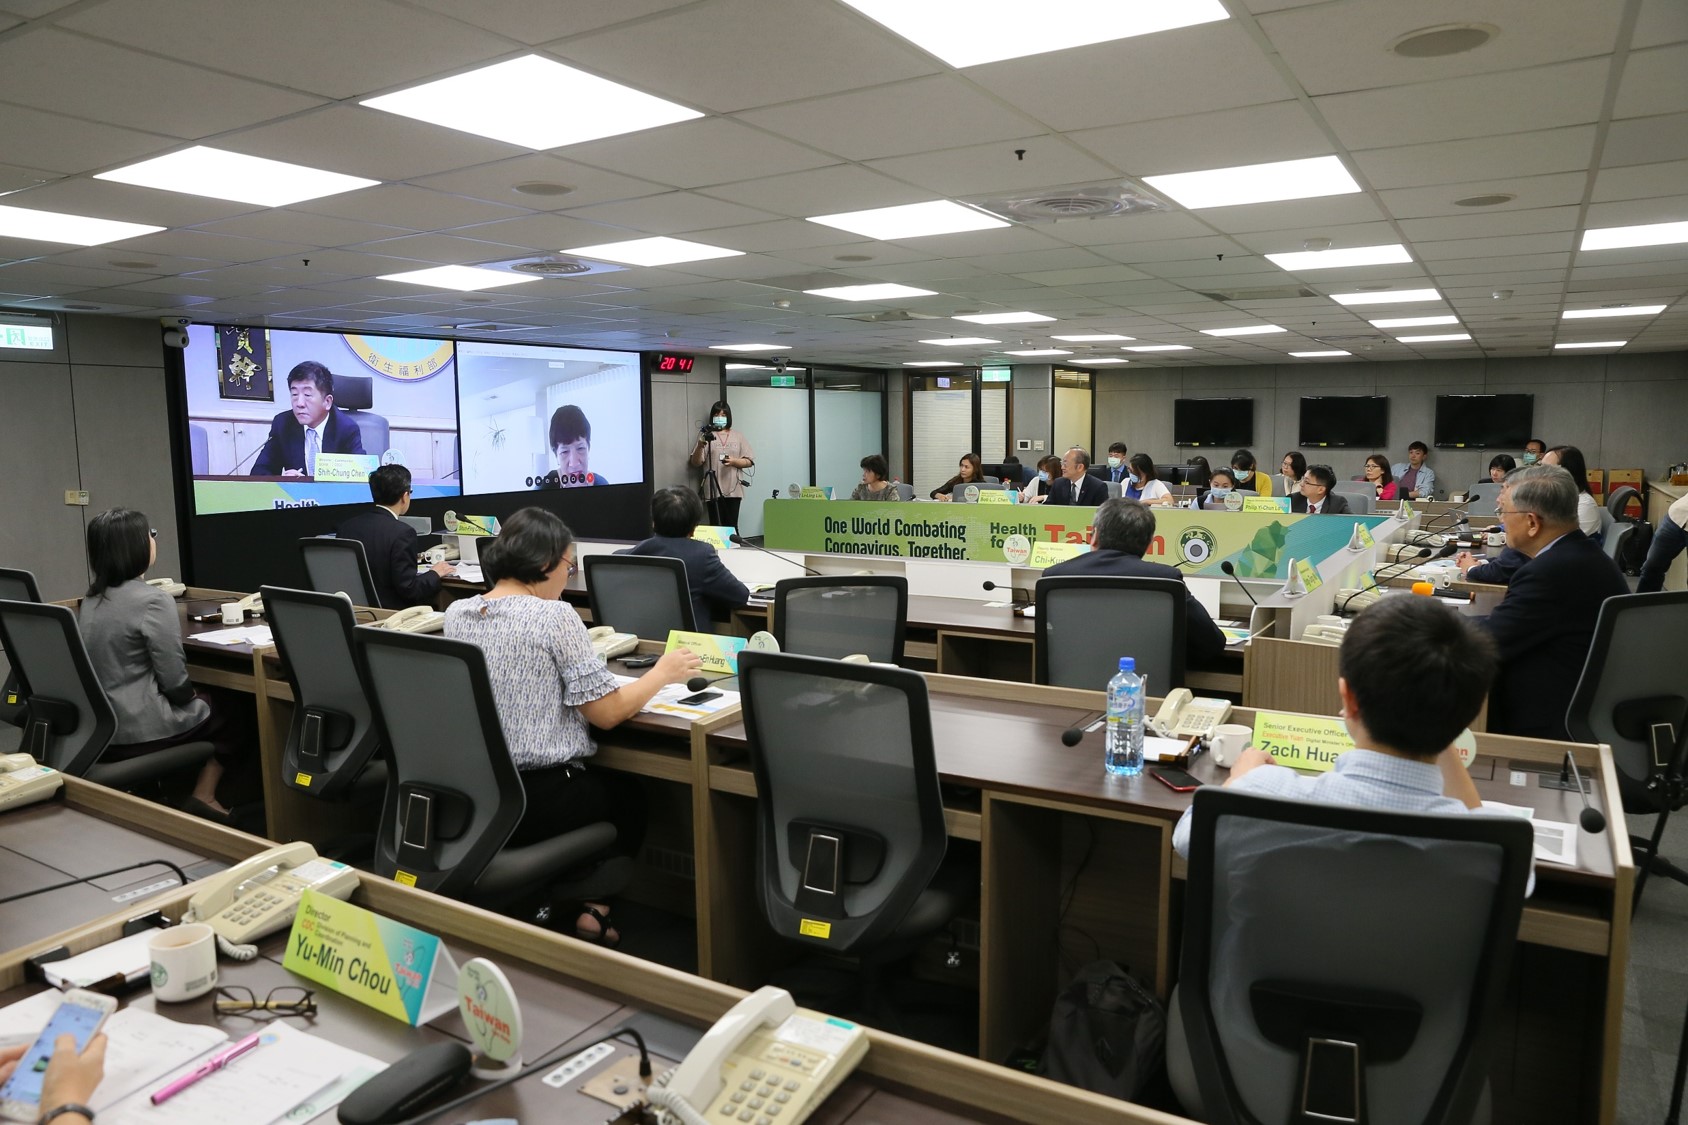 2020年5月15日在臺北舉行「新型冠狀病毒肺炎防治檢討」視訊論壇